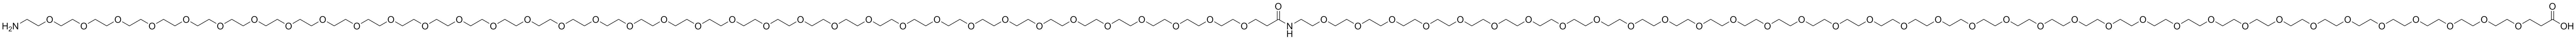 Amino-PEG36-CONH-PEG36-acid